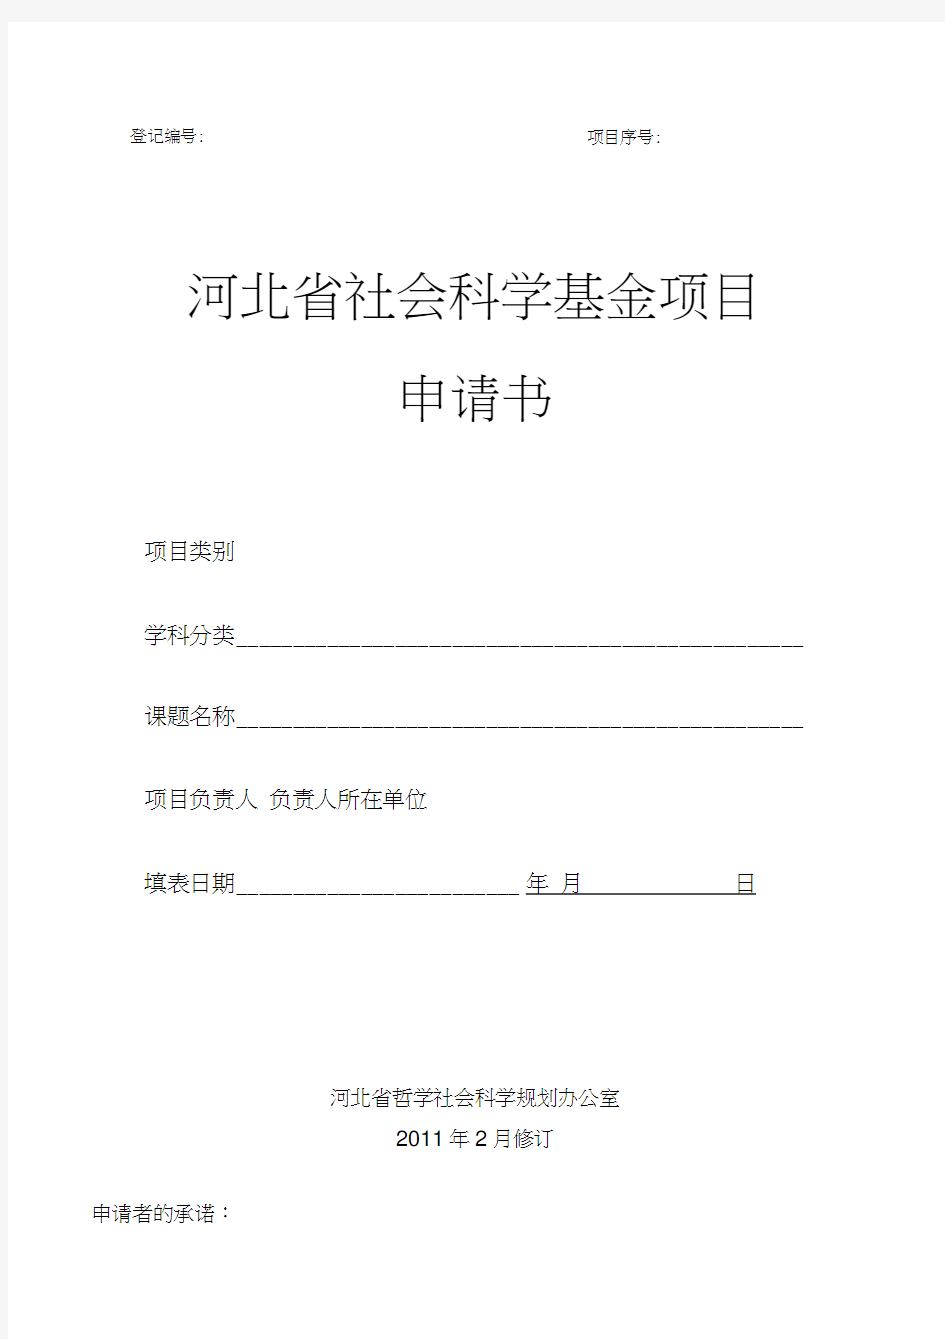 河北科技大学-1年省社科基金申报书最新版